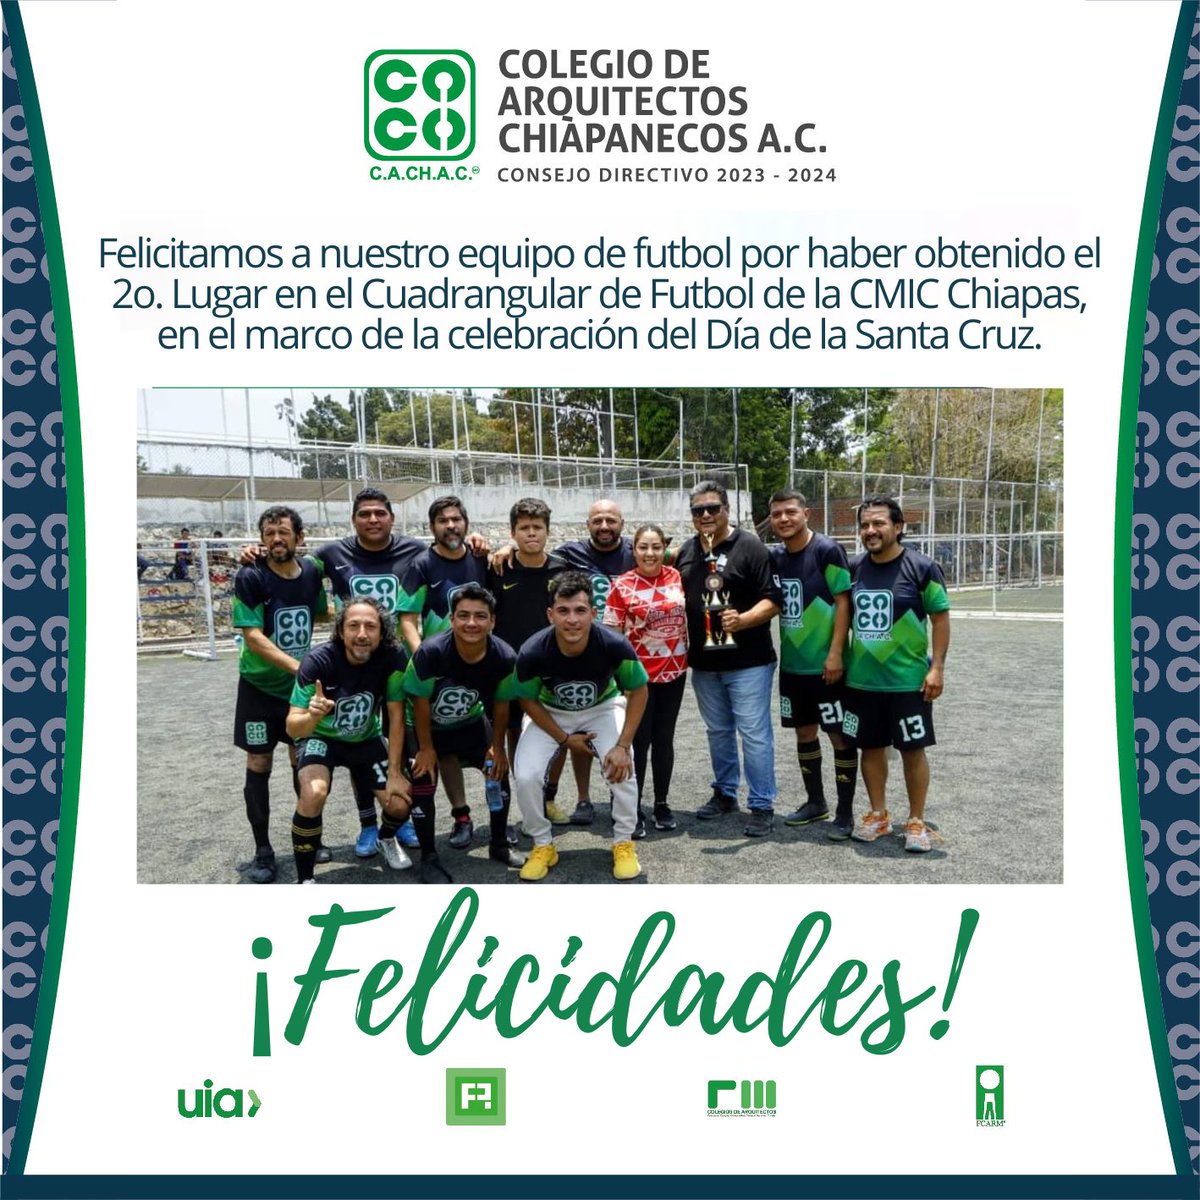 Nuestra felicitación para los integrantes del equipo de futbol del Colegio de Arquitectos Chiapanecos A.C. por haber obtenido el 2o. Lugar en el Cuadrangular de Futbol de la CMIC Chiapas en el marco de la celebración del Día de la #SantaCruz 2024.

#LaUnidadNosFortalece 
#CACHAC